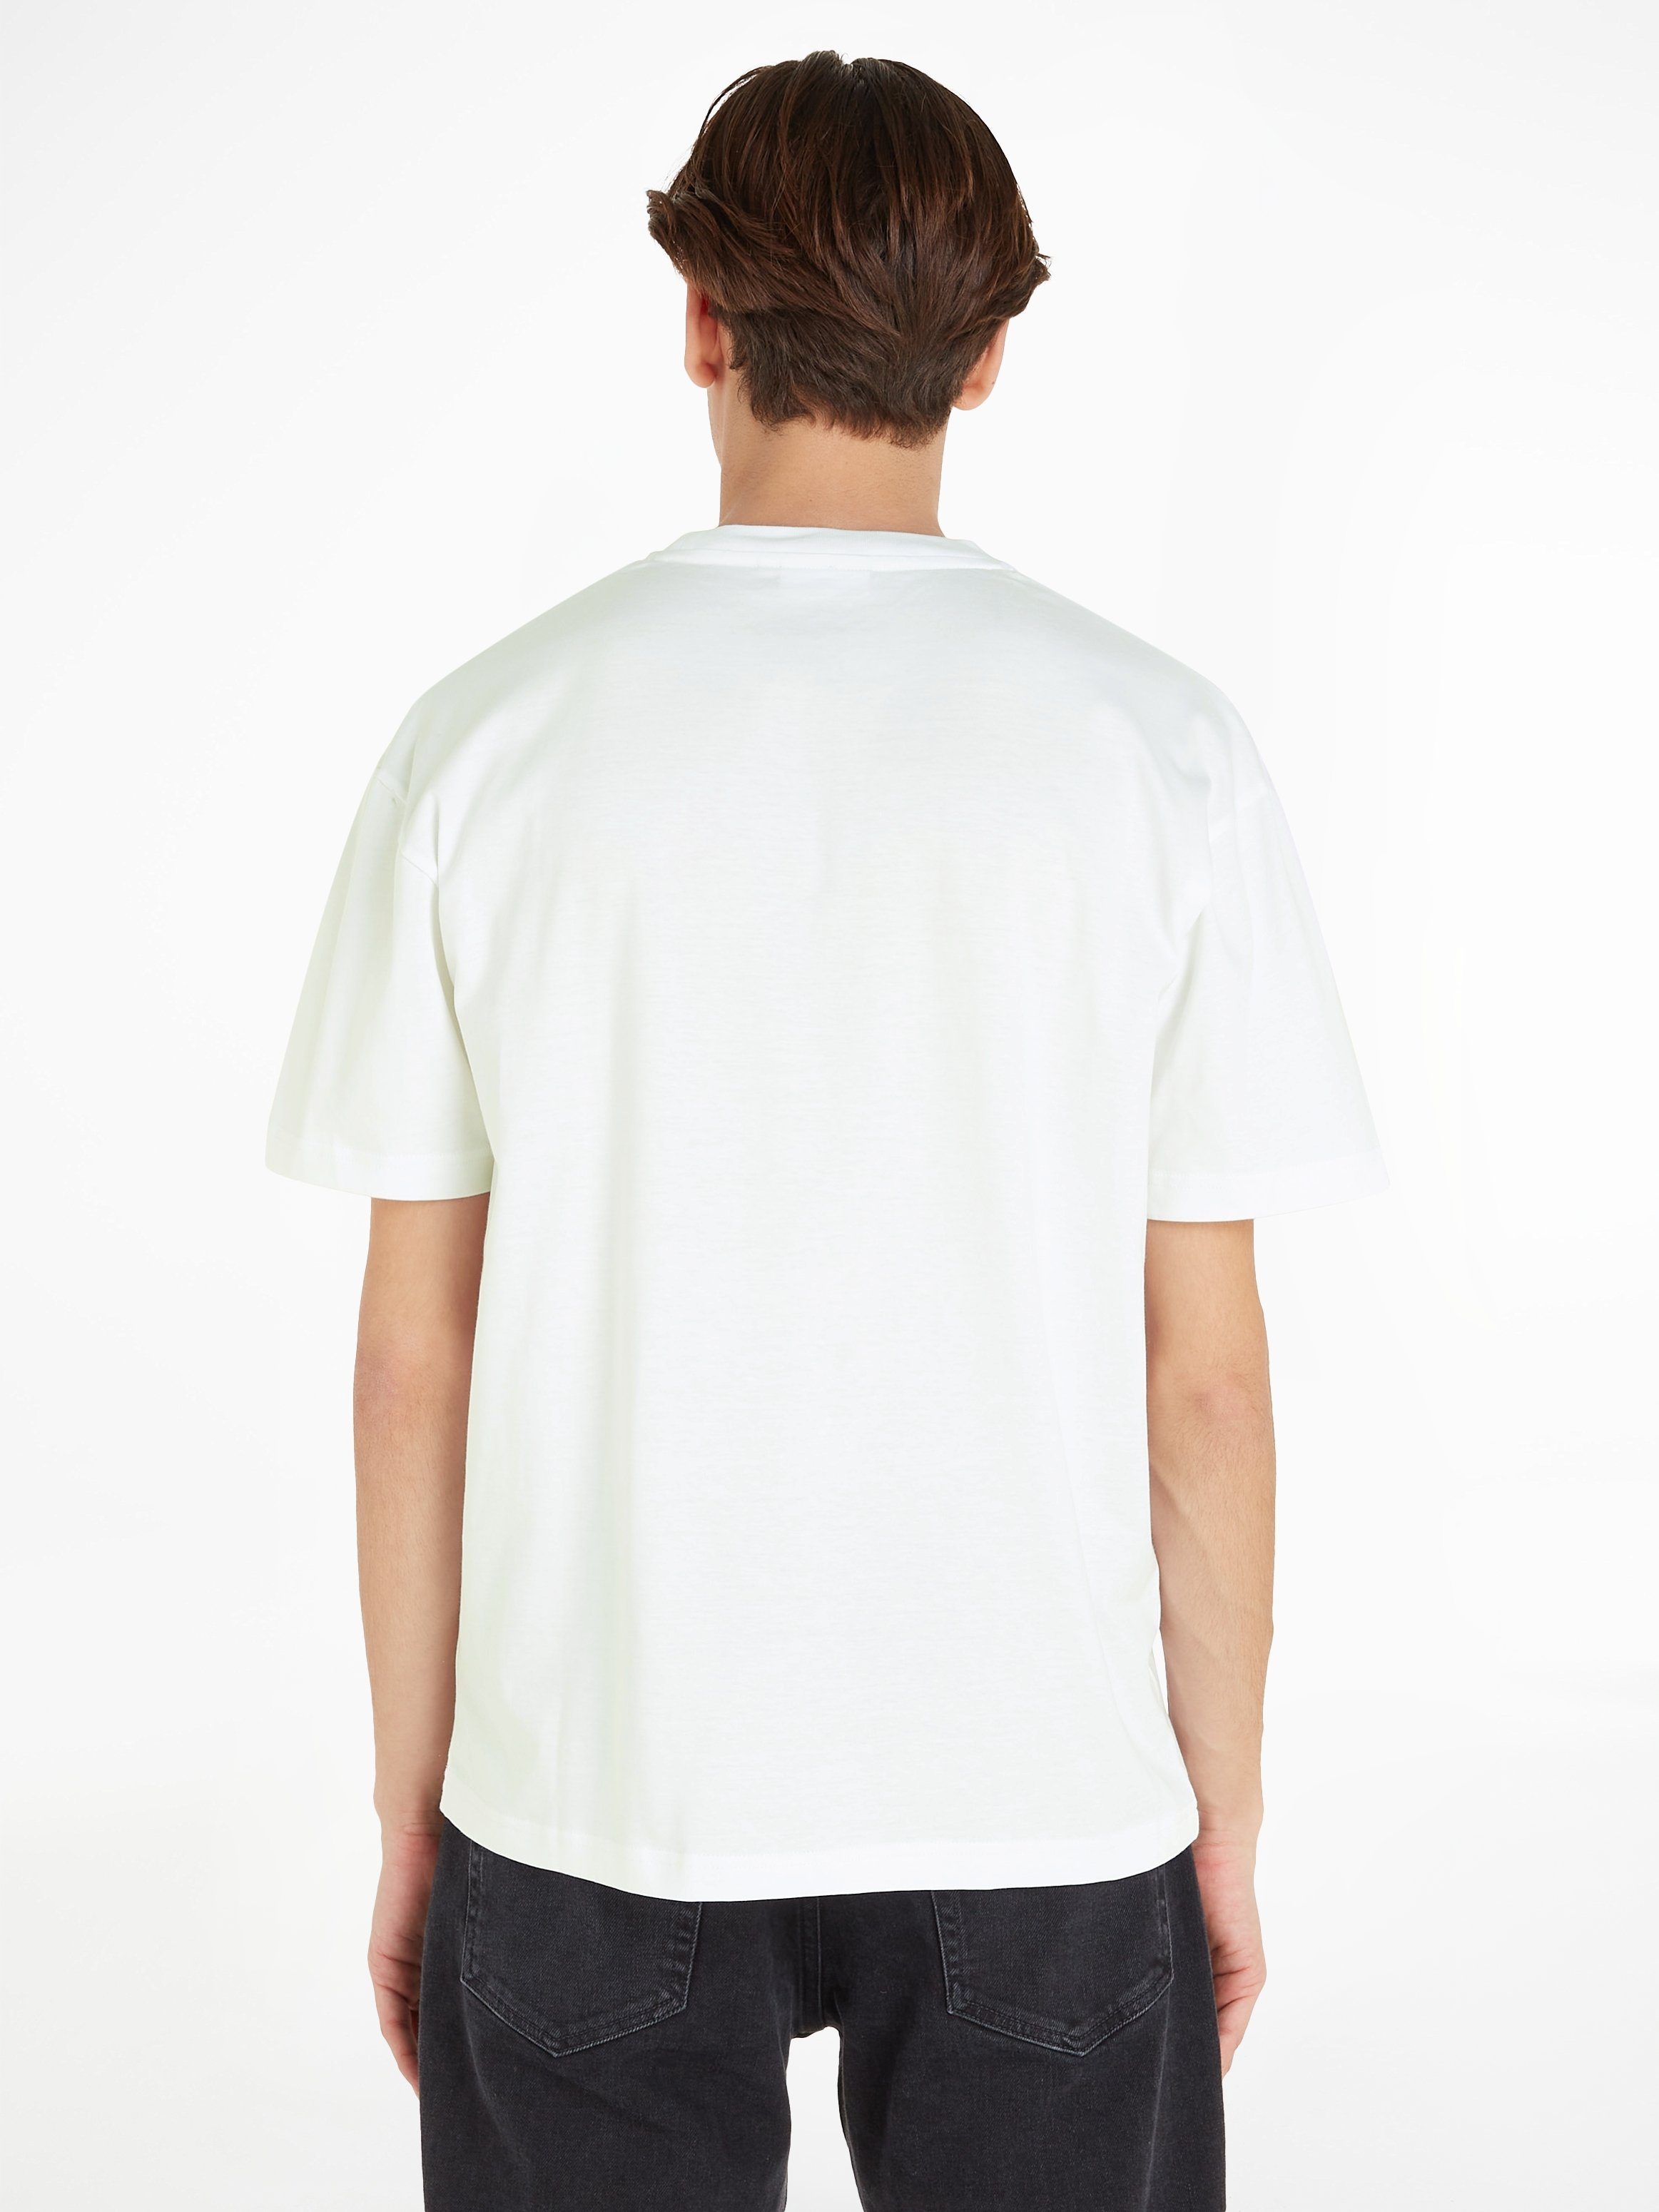 Calvin Klein mit White LOGO COMFORT HERO Bright aufgedrucktem T-Shirt Markenlabel T-SHIRT